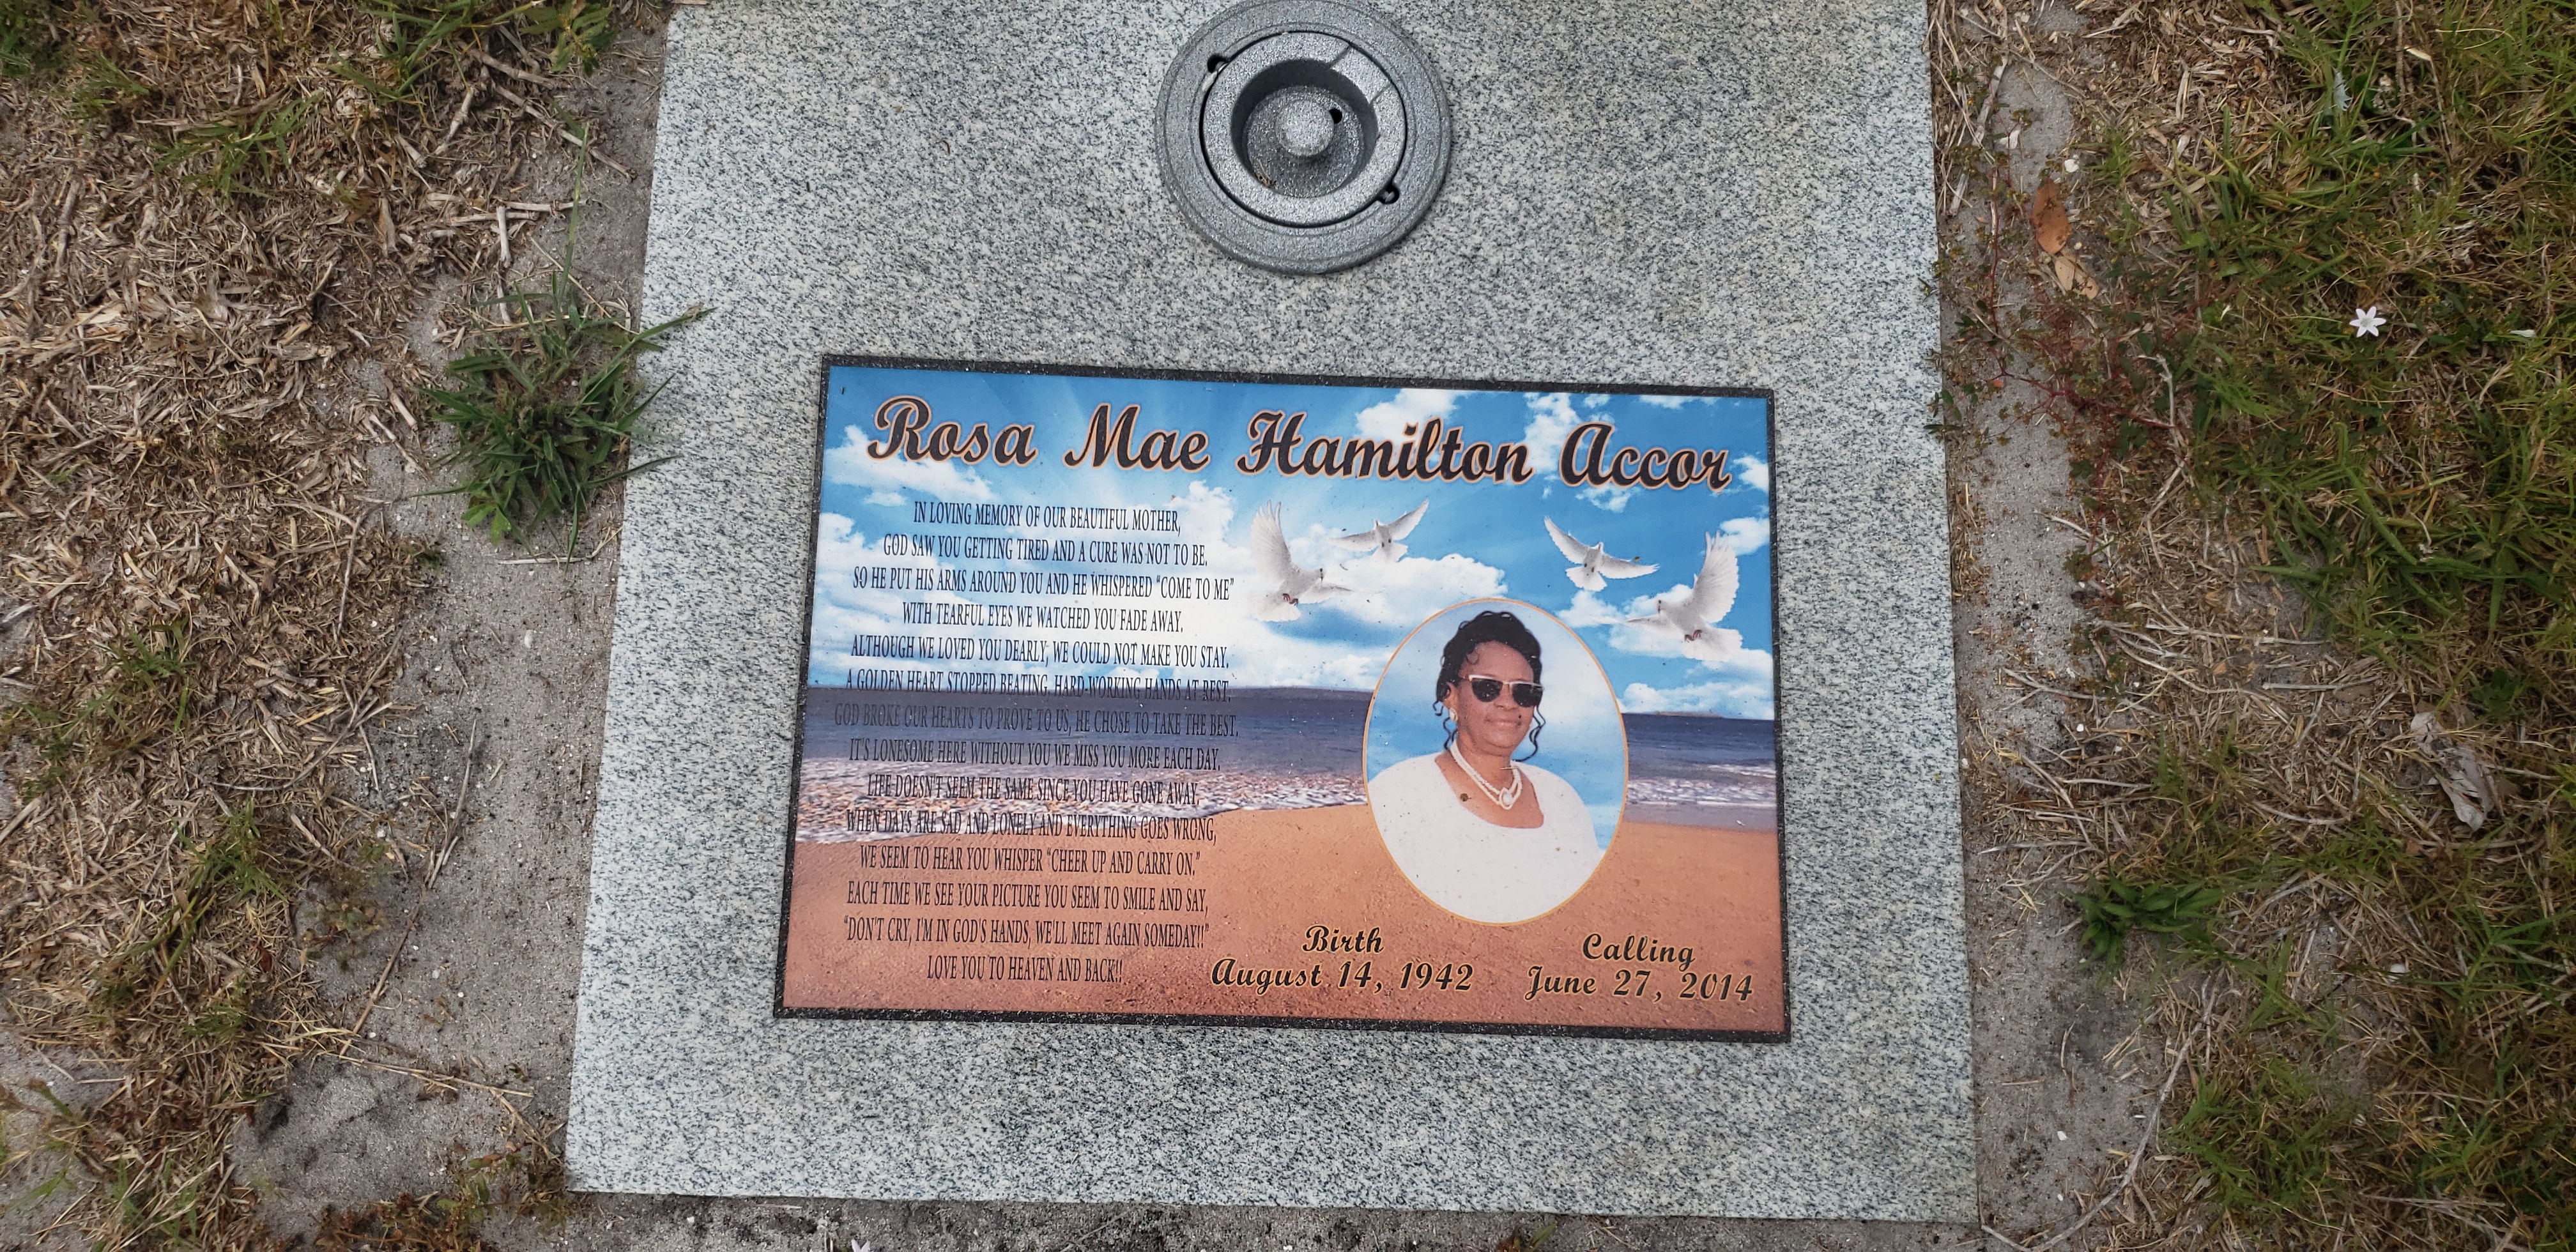 Rosa Mae Hamilton Accor